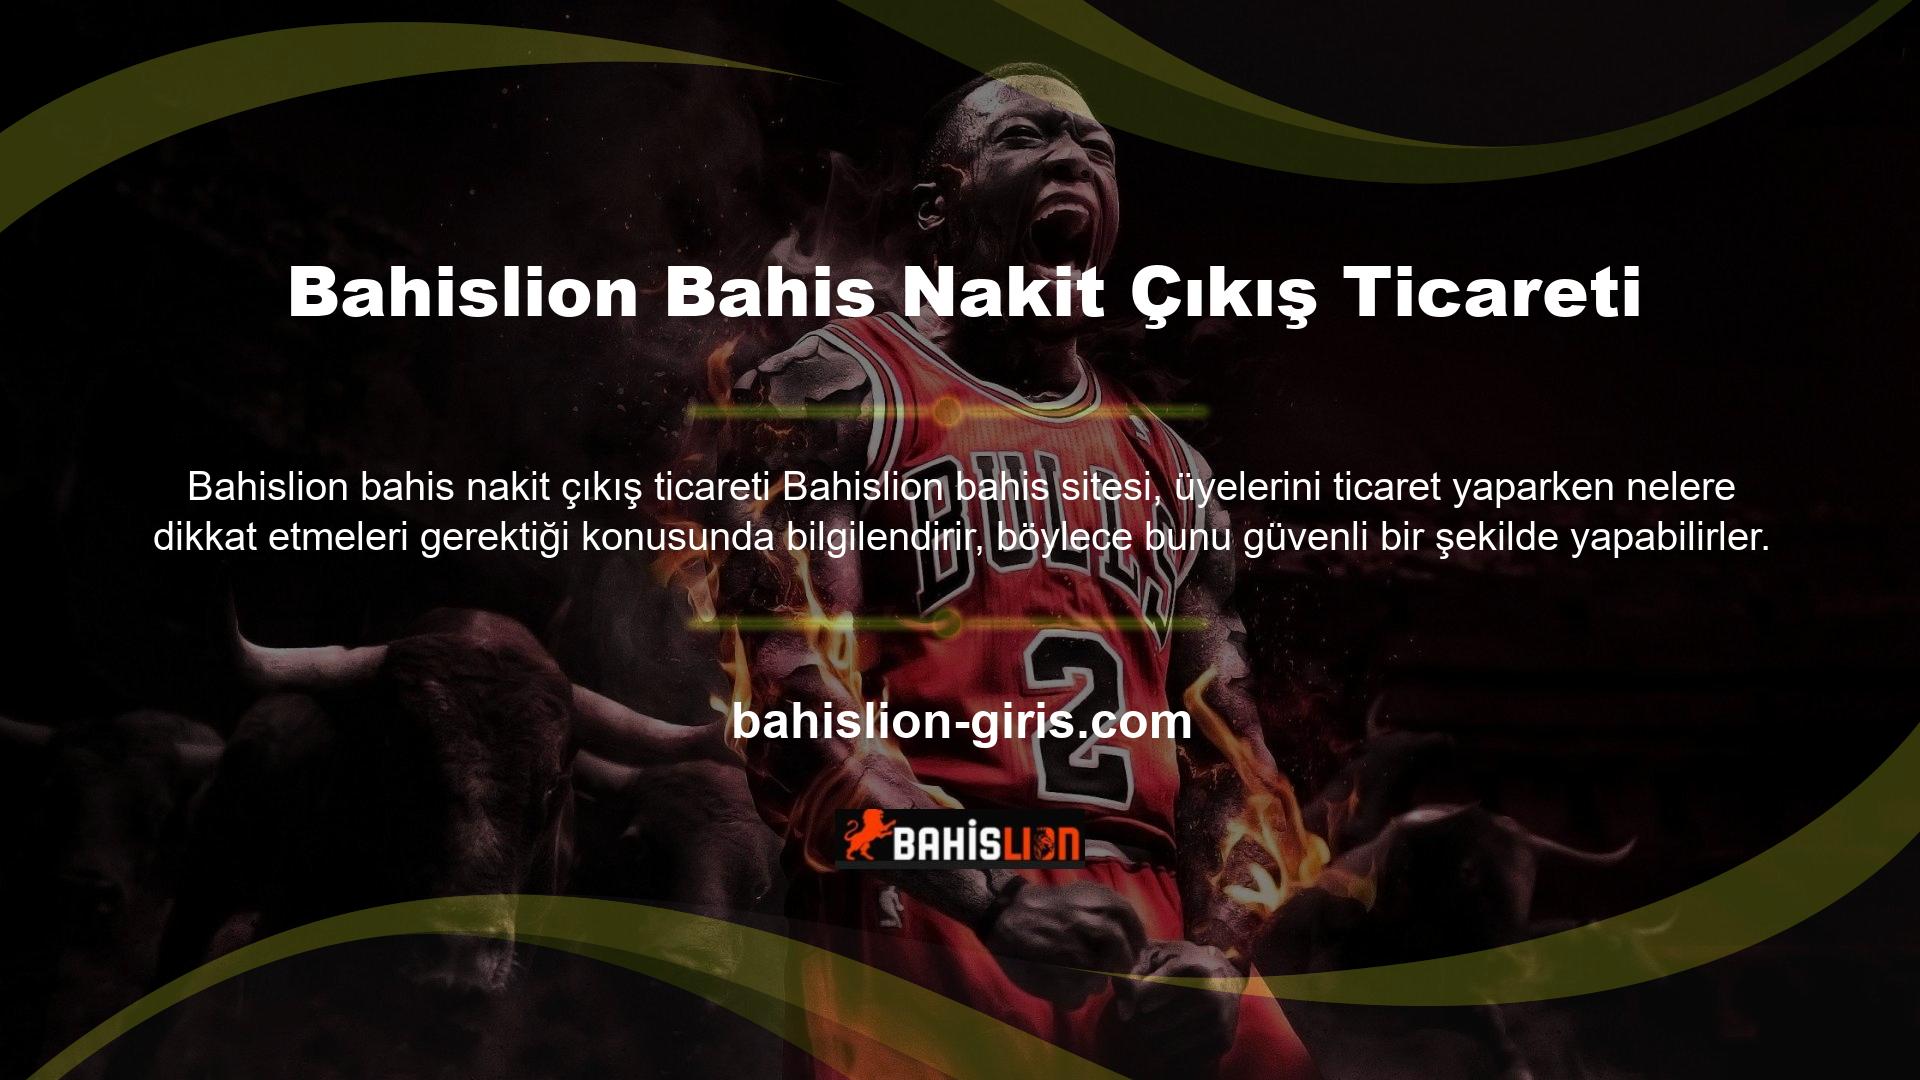 Bahislion bahis sitesinin alt bölümlerinde tüm işlem bilgileri alt bölümler aracılığıyla kullanıcıya sunulmaktadır